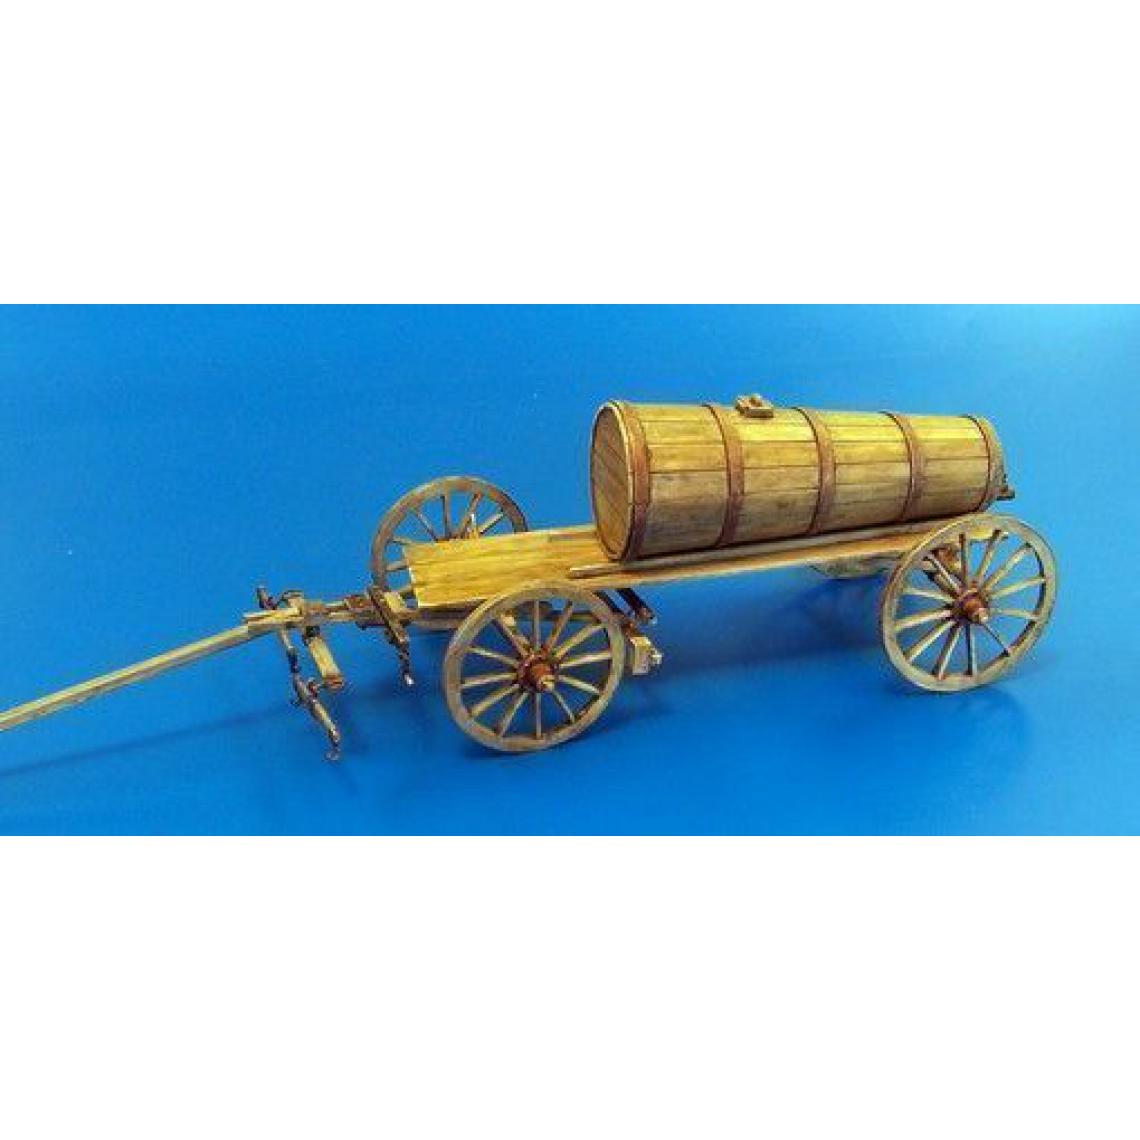 Plus Model - Hay wagon with wooden tank - 1:35e - Plus model - Accessoires et pièces